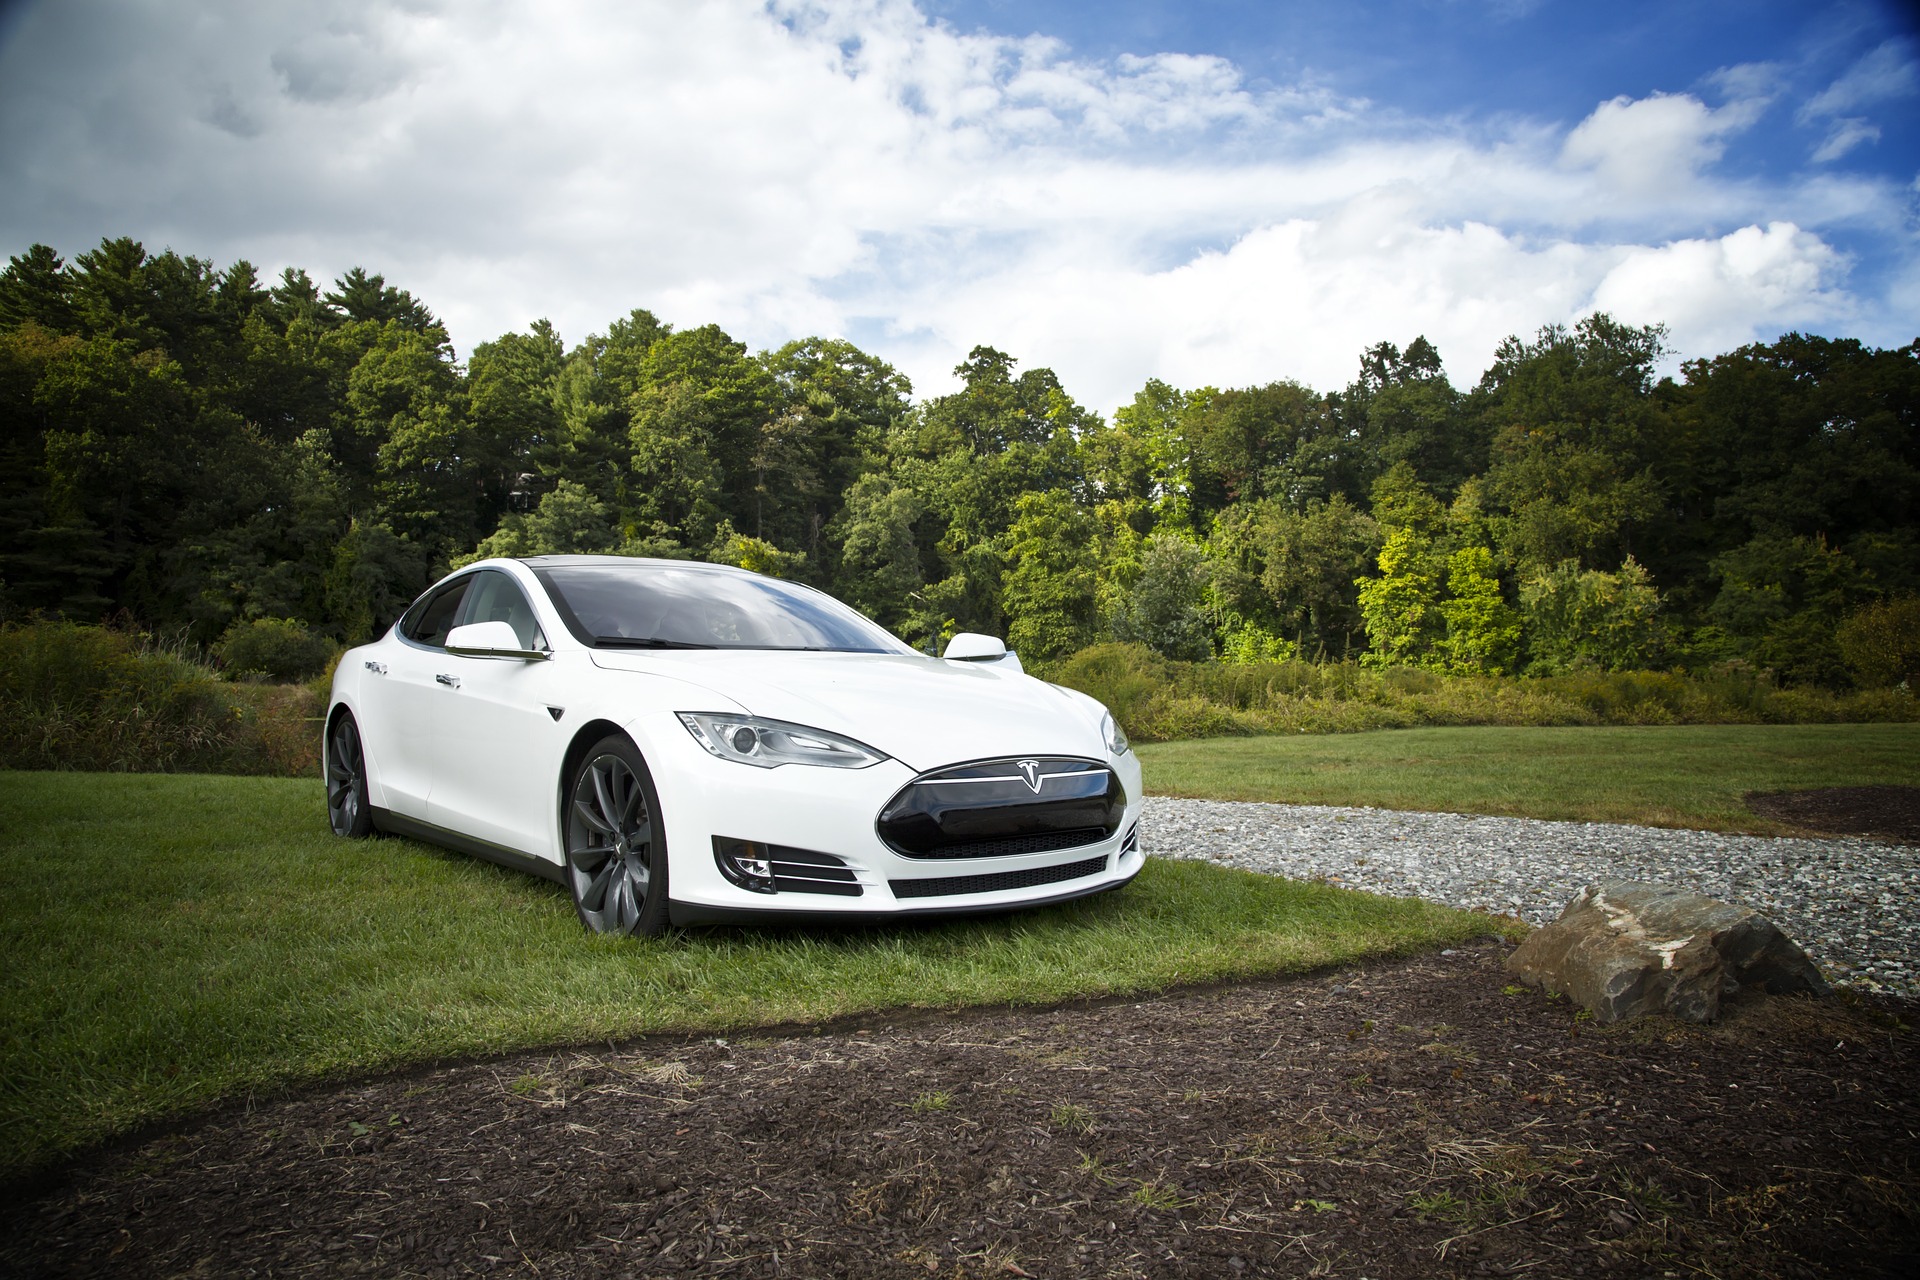 Автомобили Tesla оснастили новой функцией по отпугиванию потенциальных угонщиков голосом